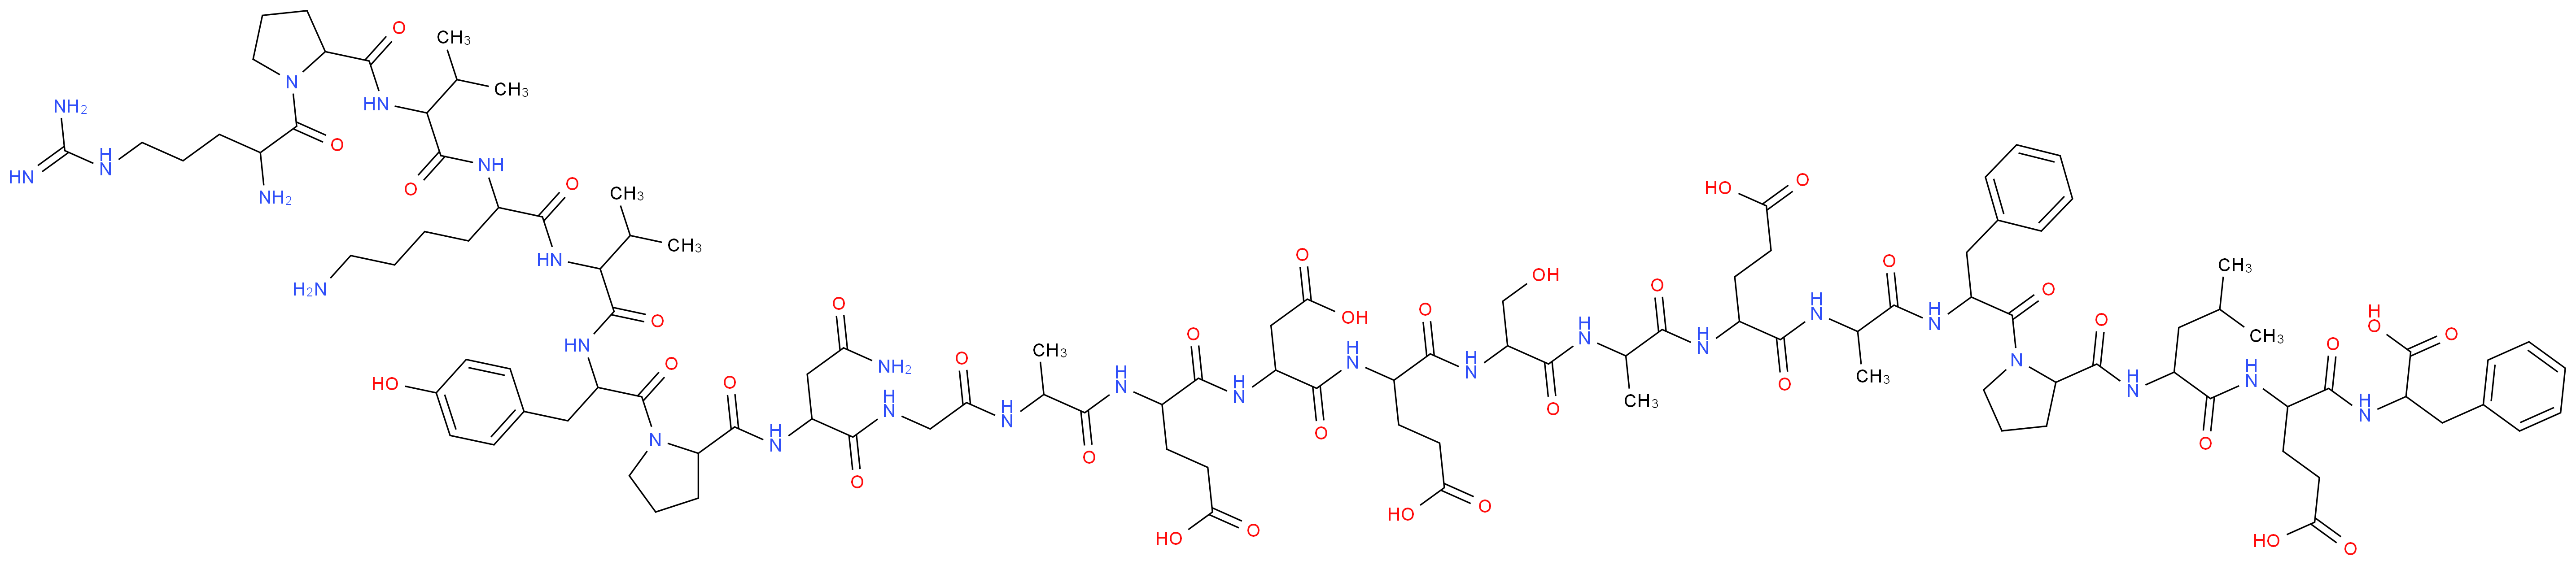 4-{2-[2-(2-{[1-(2-{2-[6-amino-2-(2-{[1-(2-amino-5-carbamimidamidopentanoyl)pyrrolidin-2-yl]formamido}-3-methylbutanamido)hexanamido]-3-methylbutanamido}-3-(4-hydroxyphenyl)propanoyl)pyrrolidin-2-yl]formamido}-3-carbamoylpropanamido)acetamido]propanamido}-4-{[2-carboxy-1-({3-carboxy-1-[(1-{[1-({3-carboxy-1-[(1-{[1-(2-{[1-({3-carboxy-1-[(1-carboxy-2-phenylethyl)carbamoyl]propyl}carbamoyl)-3-methylbutyl]carbamoyl}pyrrolidin-1-yl)-1-oxo-3-phenylpropan-2-yl]carbamoyl}ethyl)carbamoyl]propyl}carbamoyl)ethyl]carbamoyl}-2-hydroxyethyl)carbamoyl]propyl}carbamoyl)ethyl]carbamoyl}butanoic acid_分子结构_CAS_53917-42-3